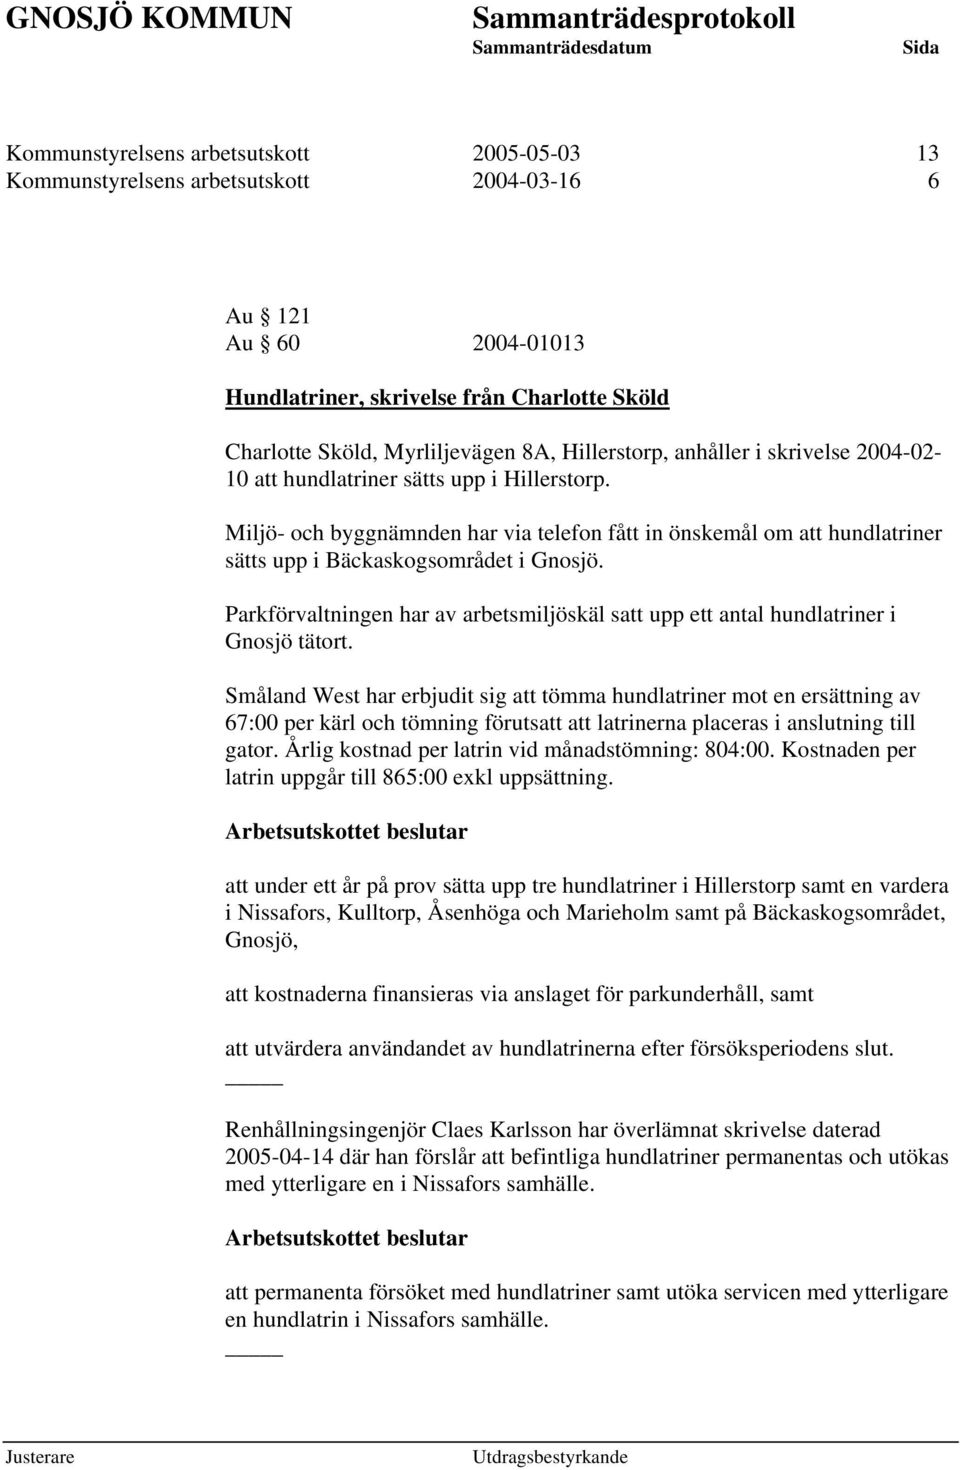 Miljö- och byggnämnden har via telefon fått in önskemål om att hundlatriner sätts upp i Bäckaskogsområdet i Gnosjö.